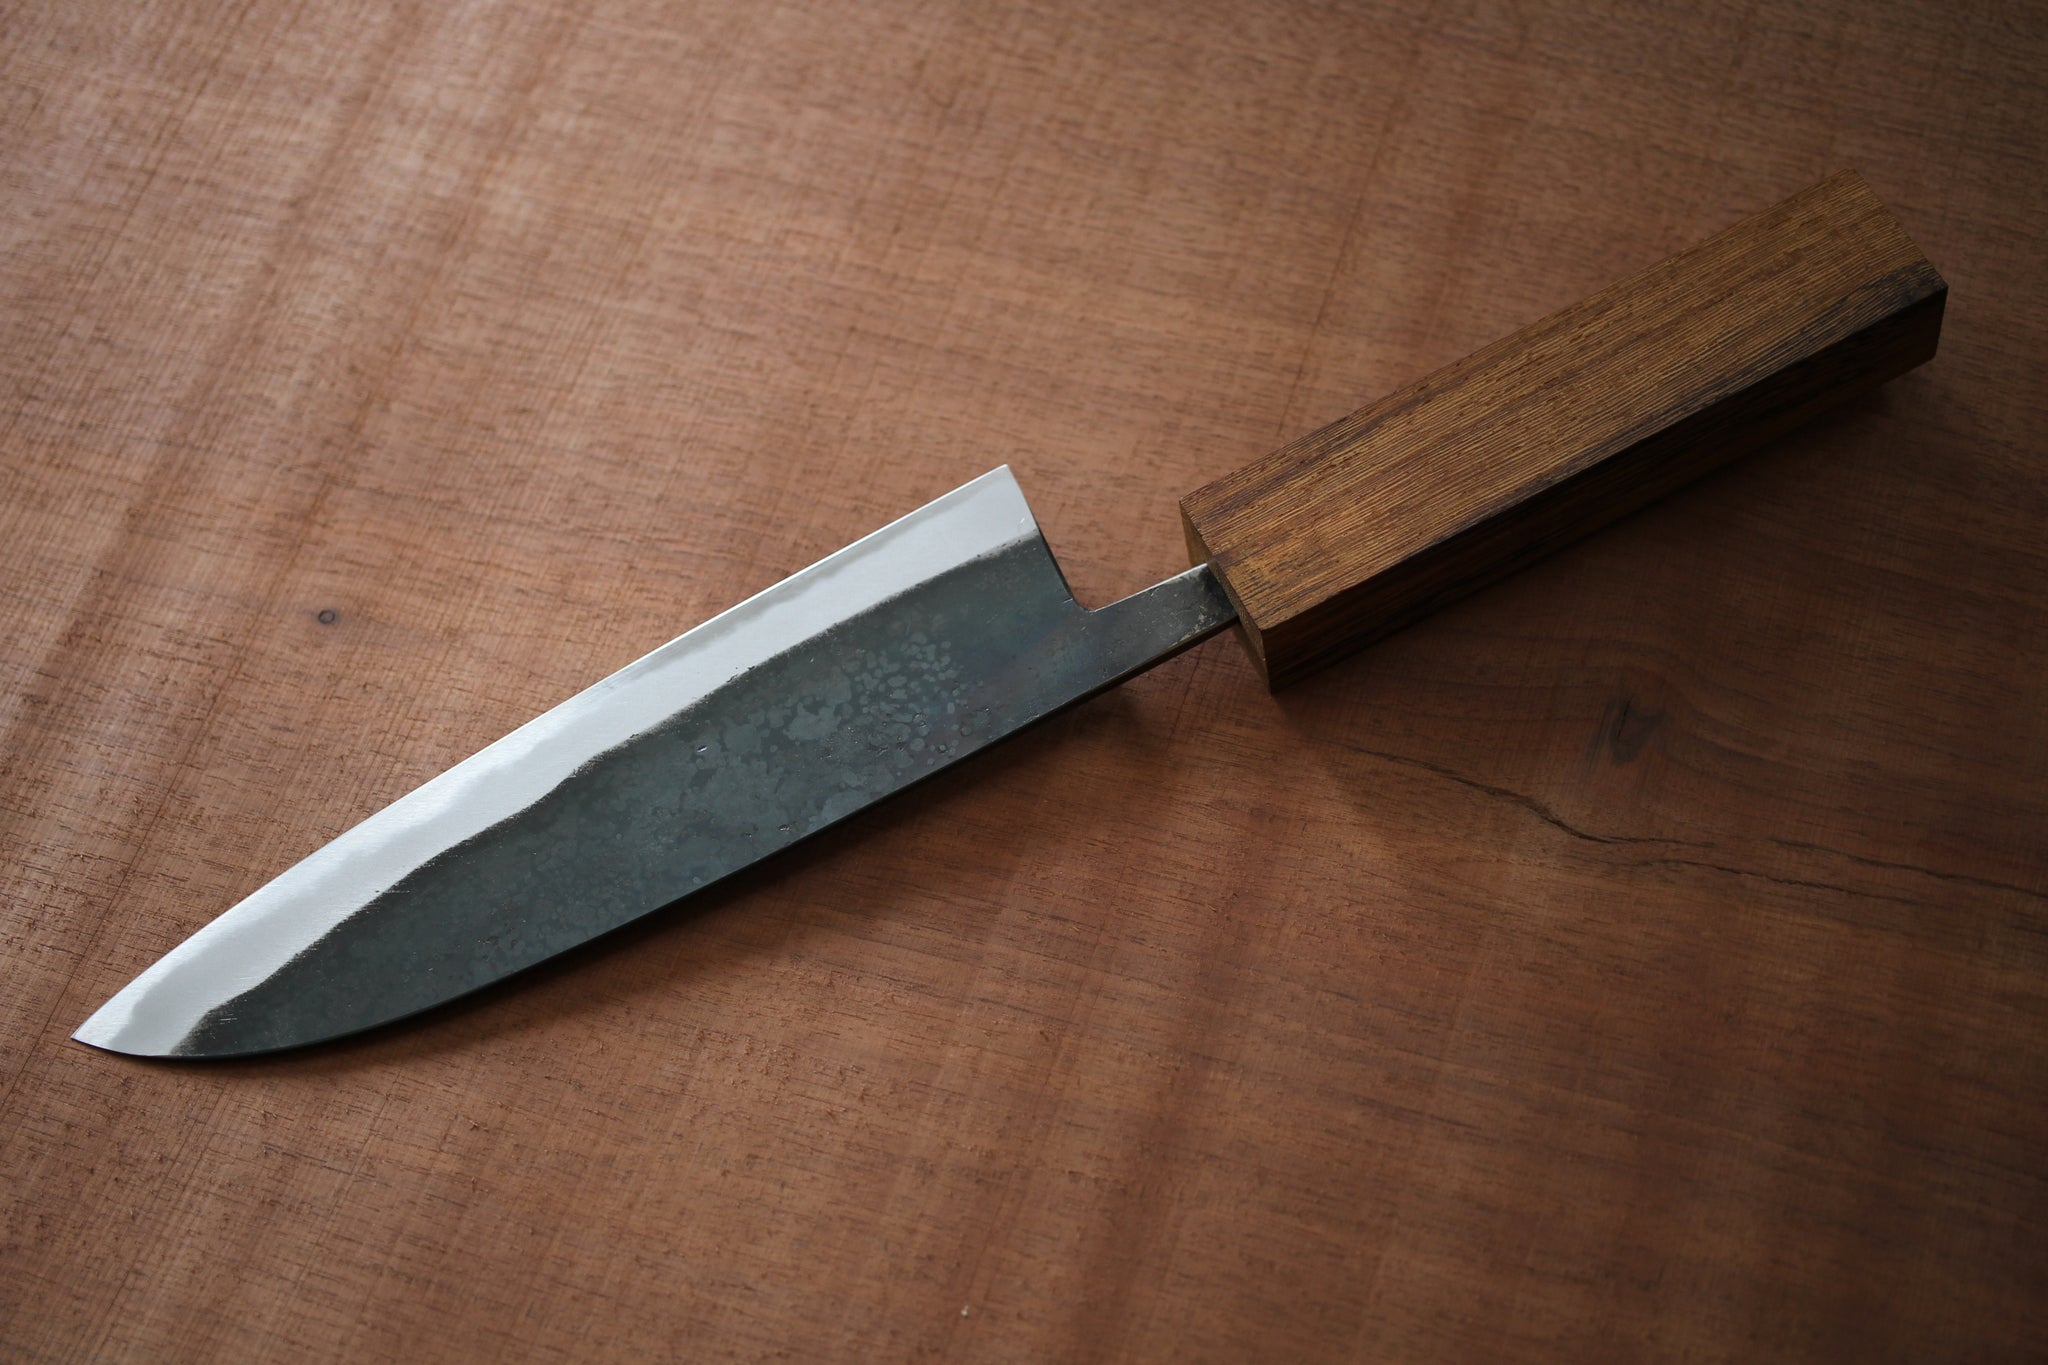 Kit de fabrication de couteaux sur mesure ibuki wa handle pour débutants Daisuke Nishida blanc #1 acier Gyuto 210mm